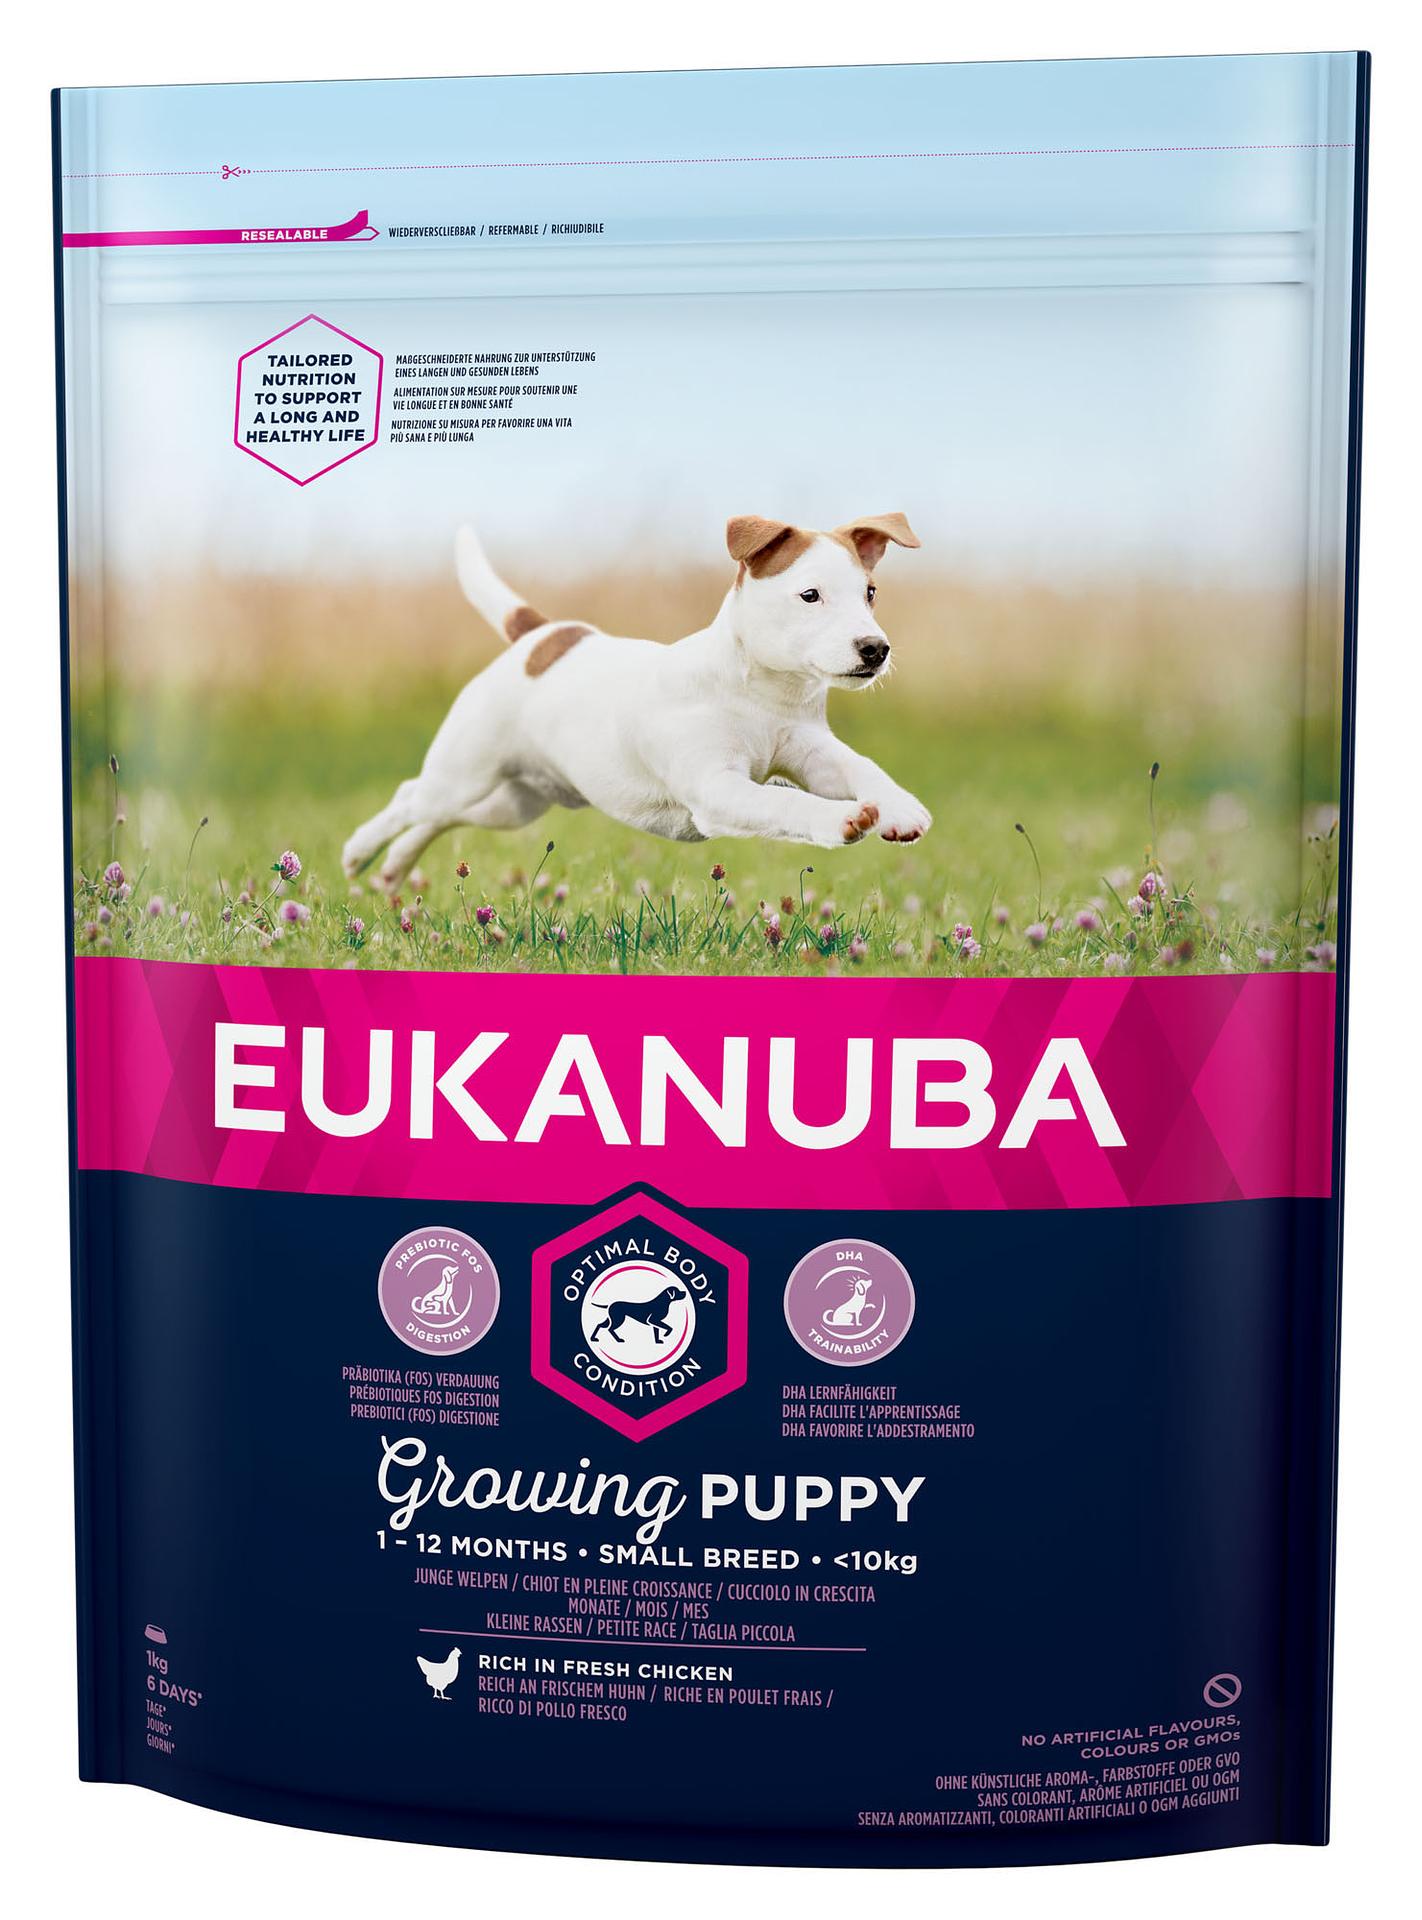 Eukanuba Puppy Small